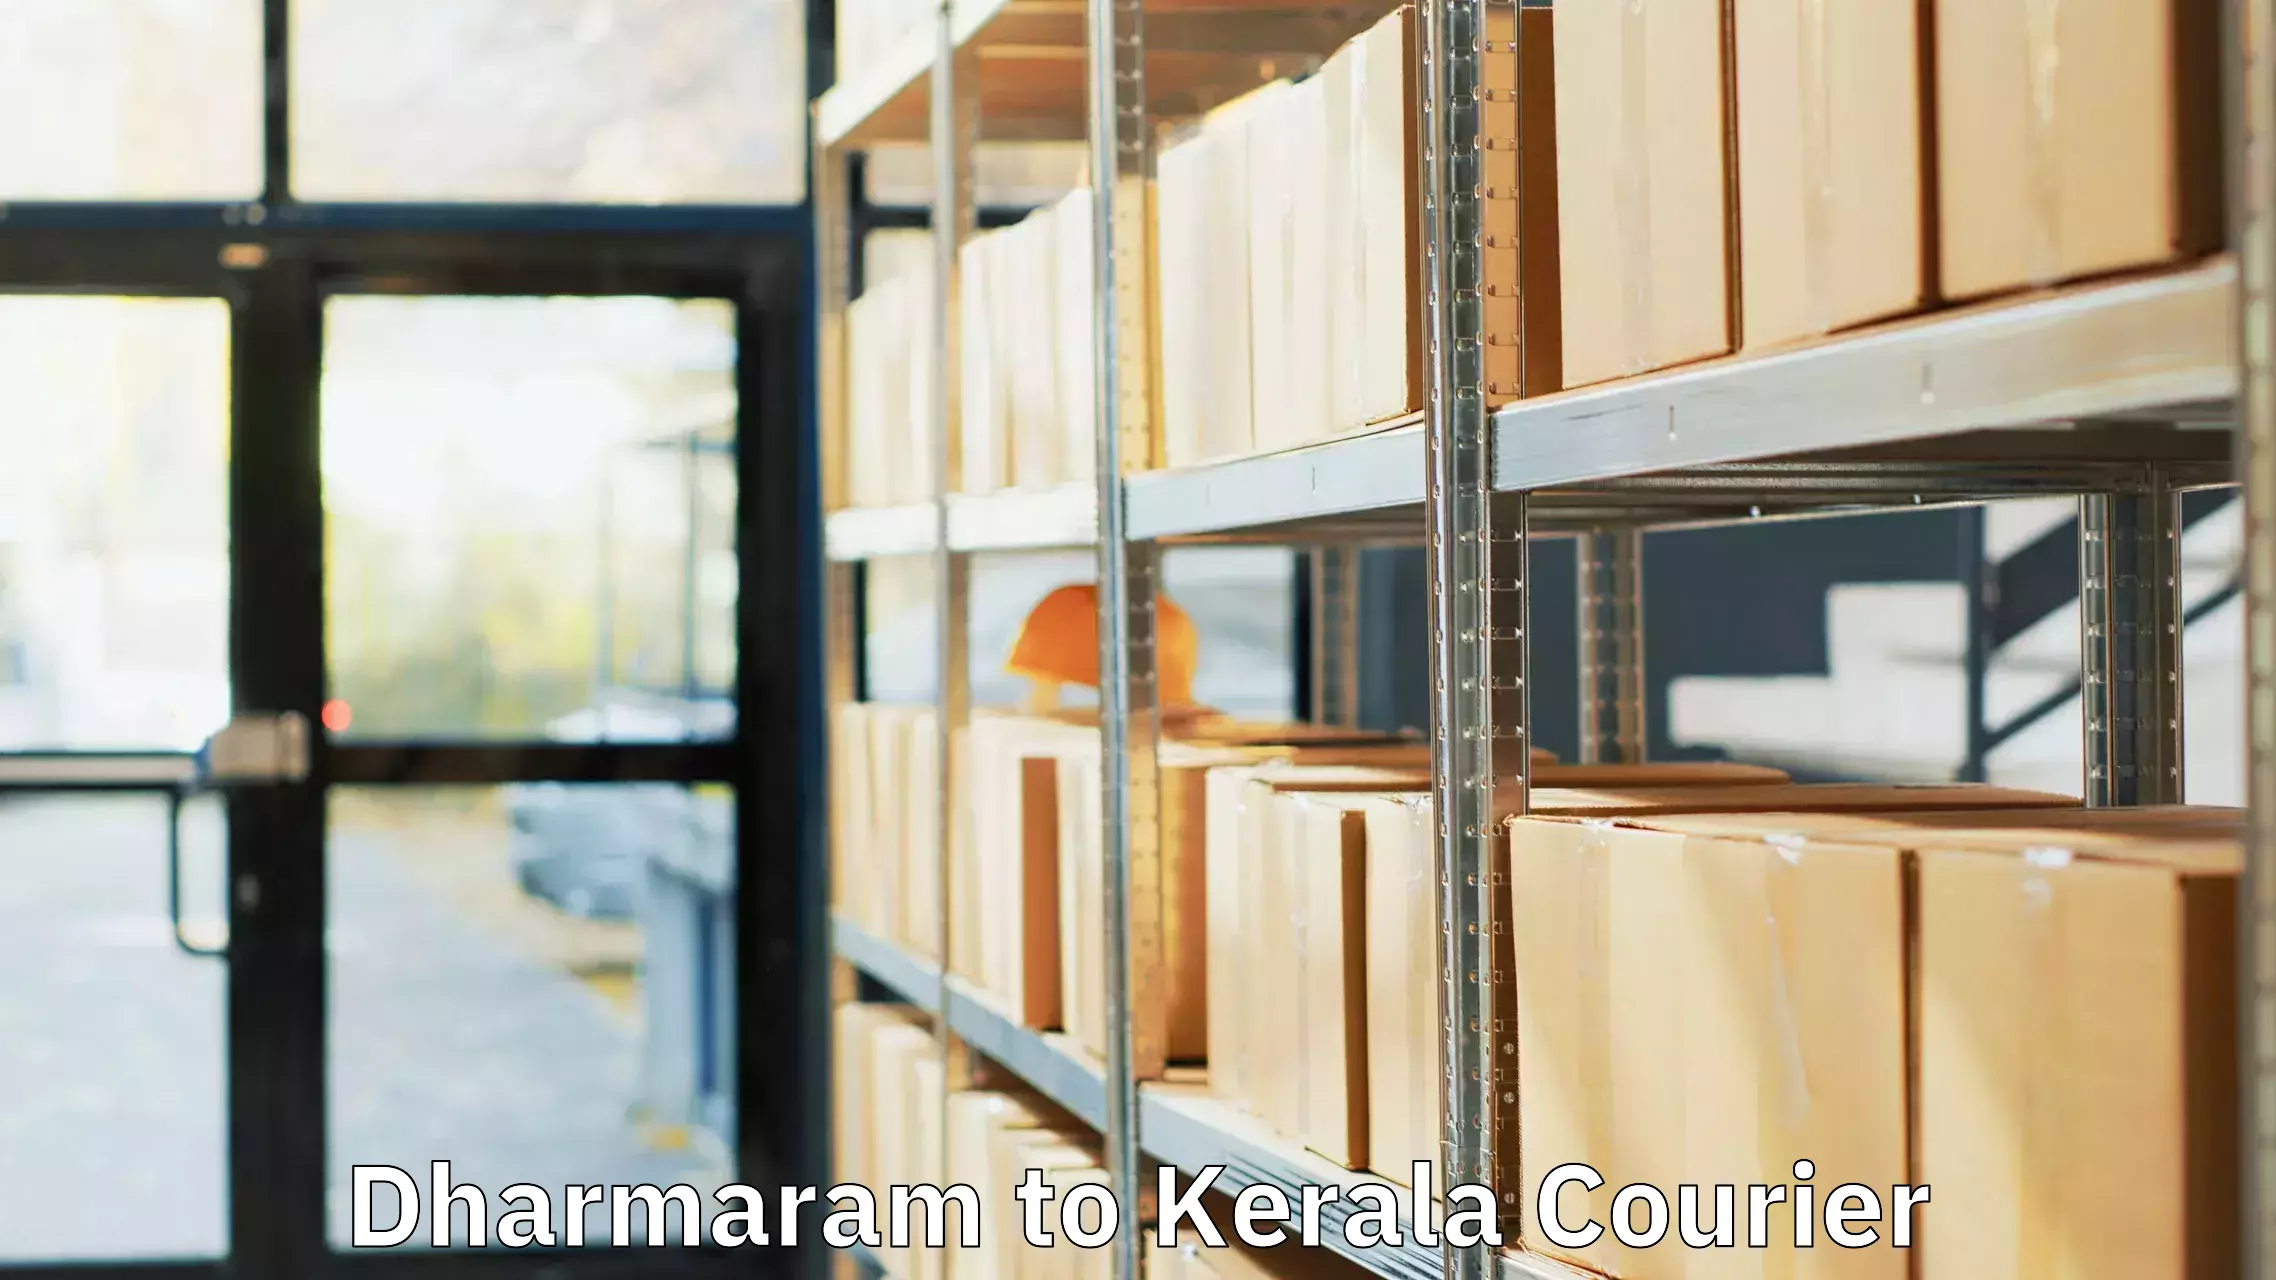 Baggage transport calculator Dharmaram to Kerala